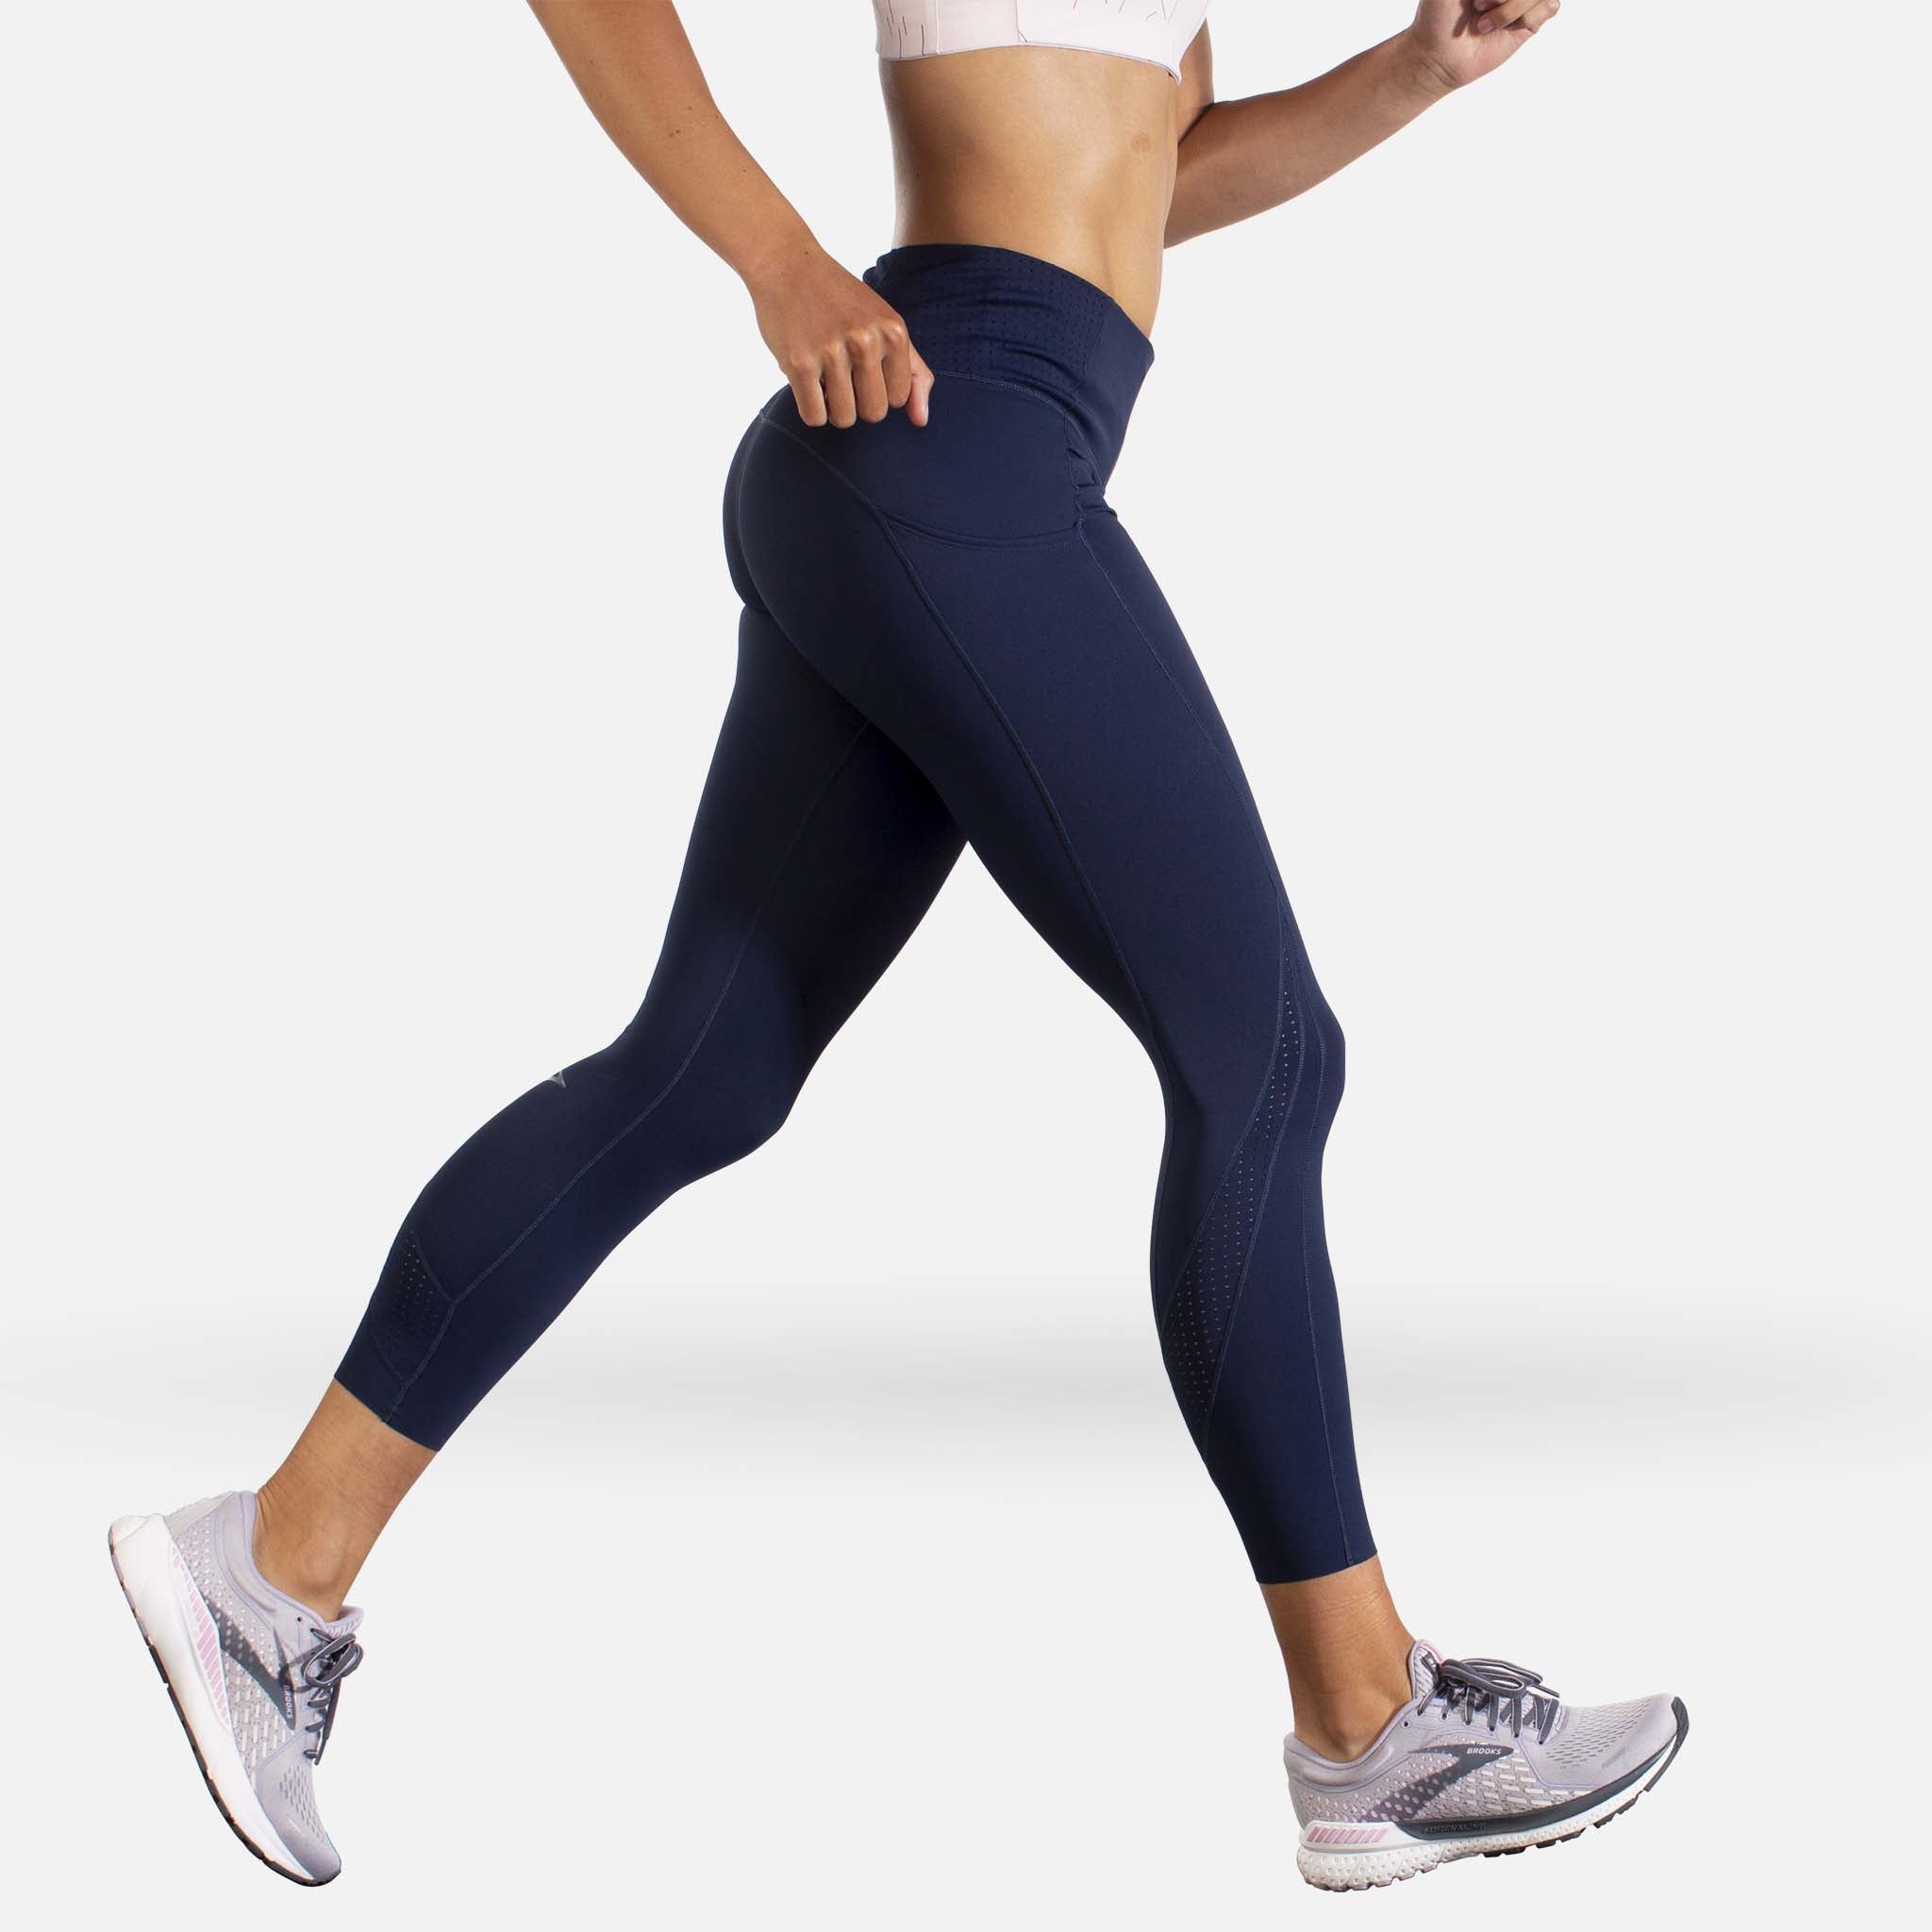 Brooks Method 3/4 Tight running leggings for women – Soccer Sport Fitness